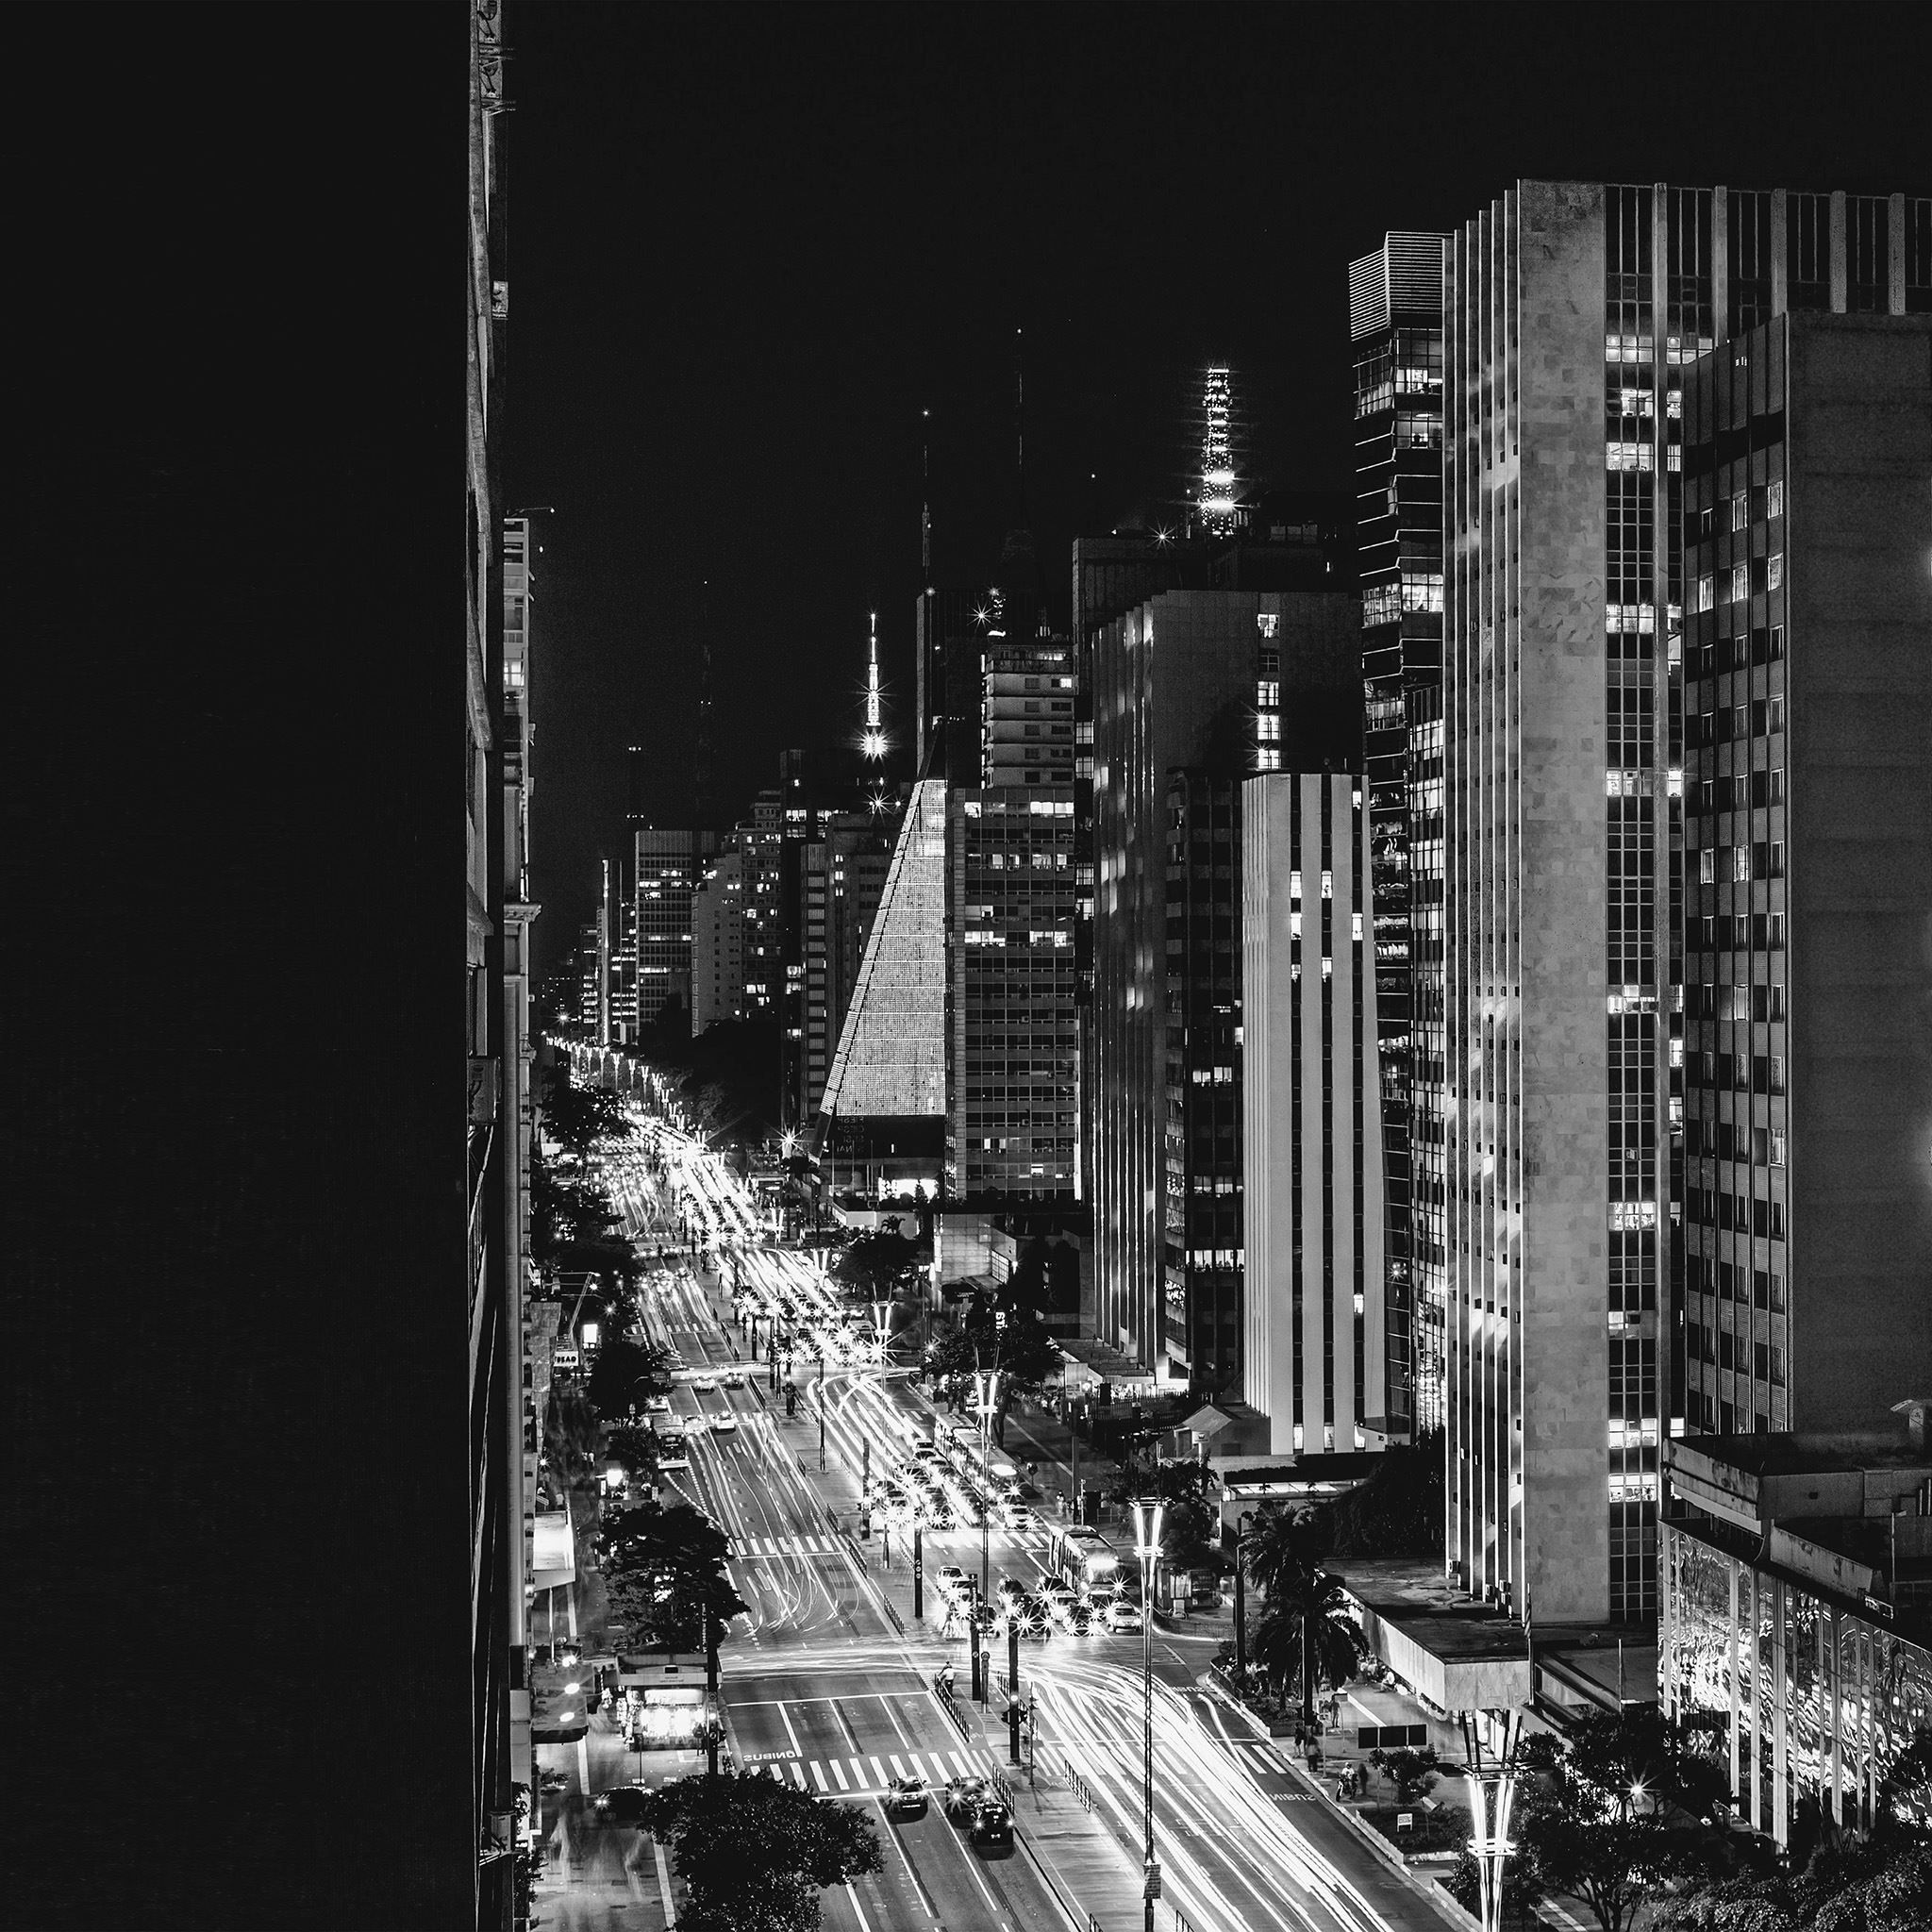 City Night View Urban Street Bw Dark iPad Air Wallpaper Free Download